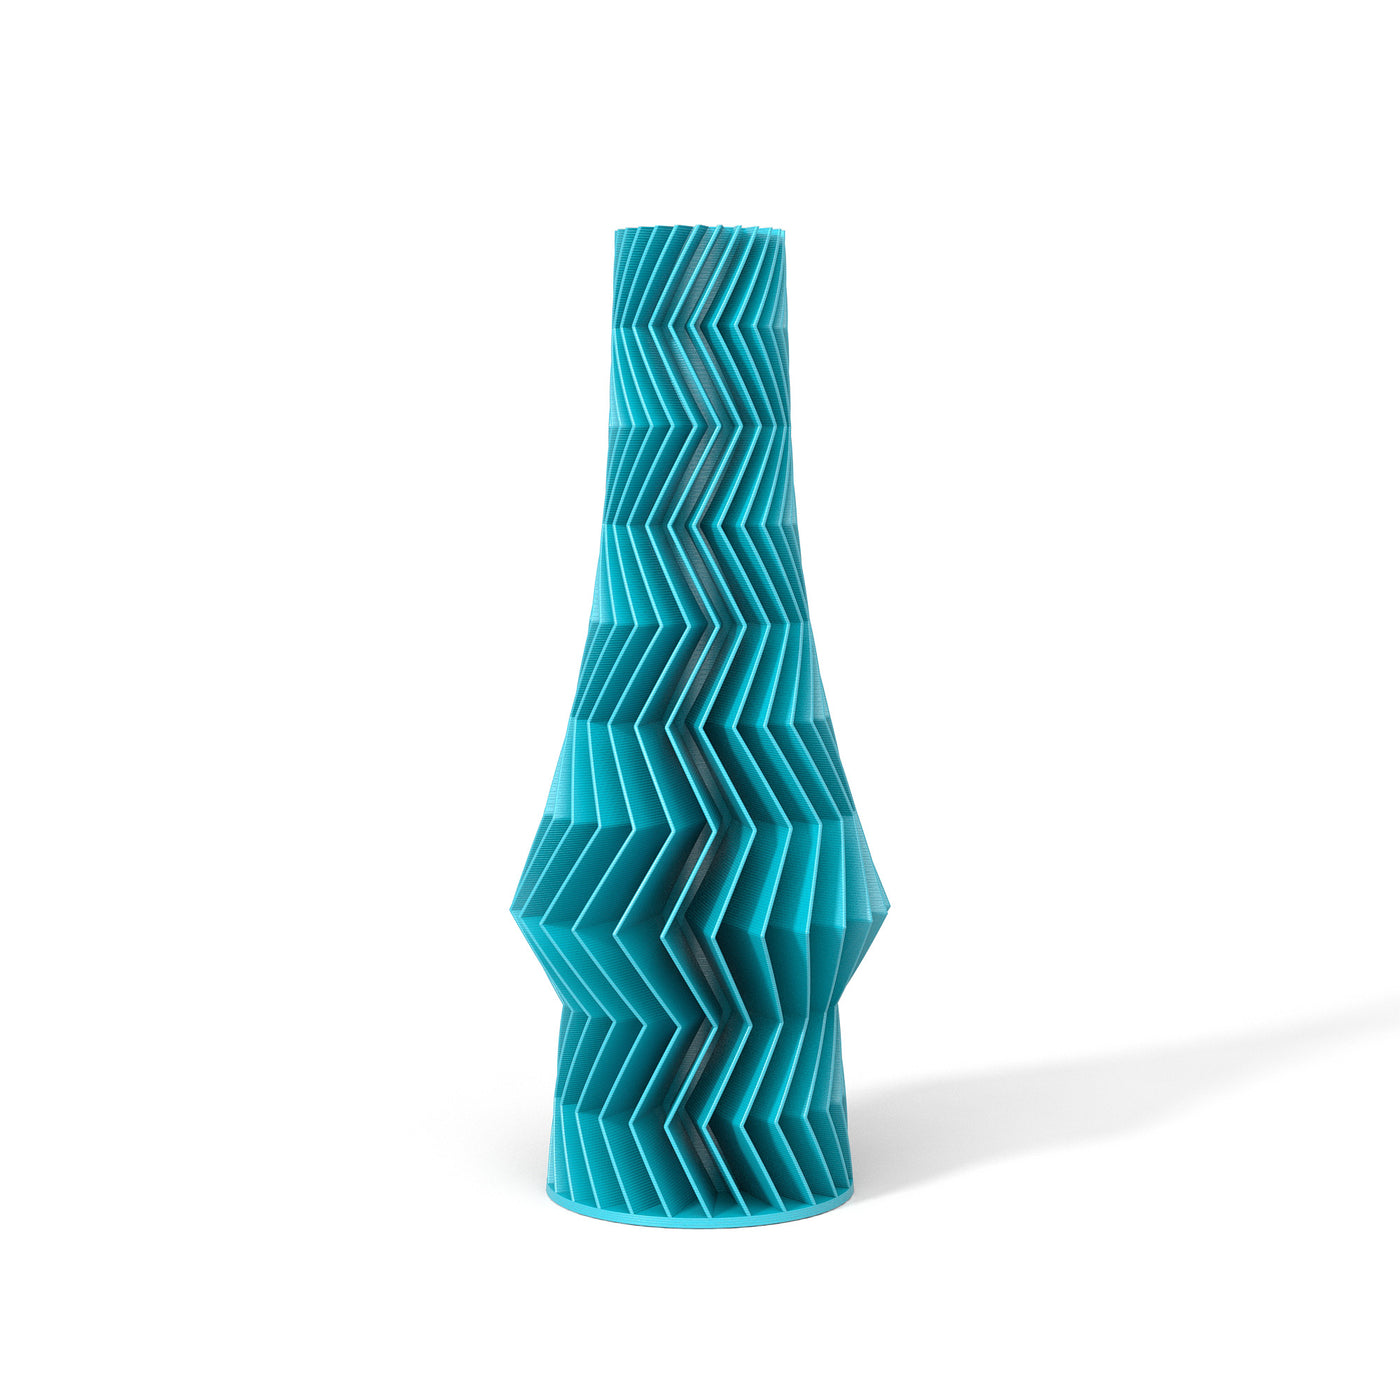 Tyrkysová designová váza 3D print ZIG ZAG 3 zepředu